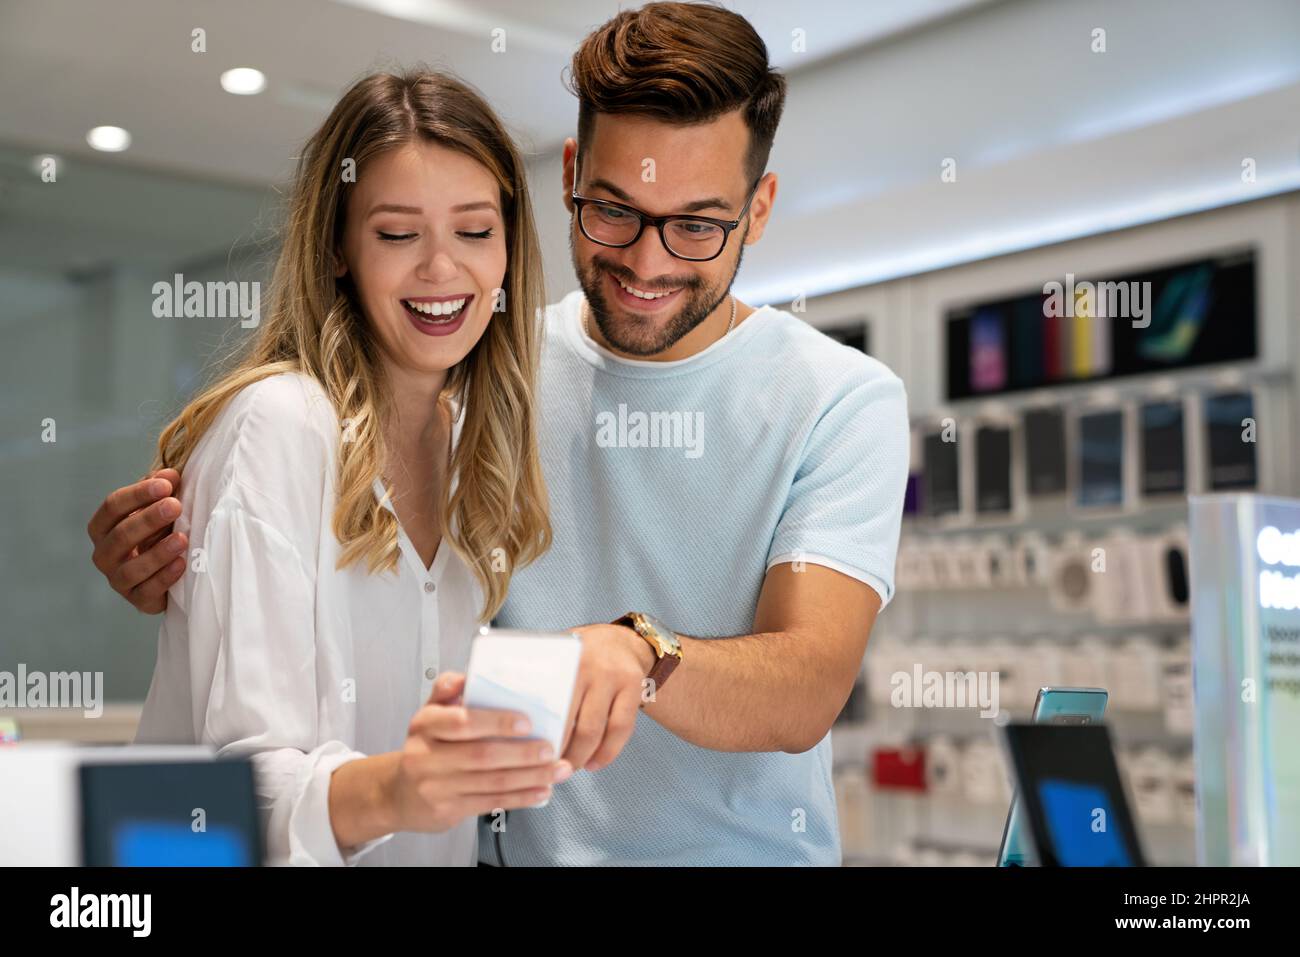 Felici i giovani che acquistano un nuovo smartphone nel negozio mobile. Concetto di acquisto di dispositivi tecnologici Foto Stock